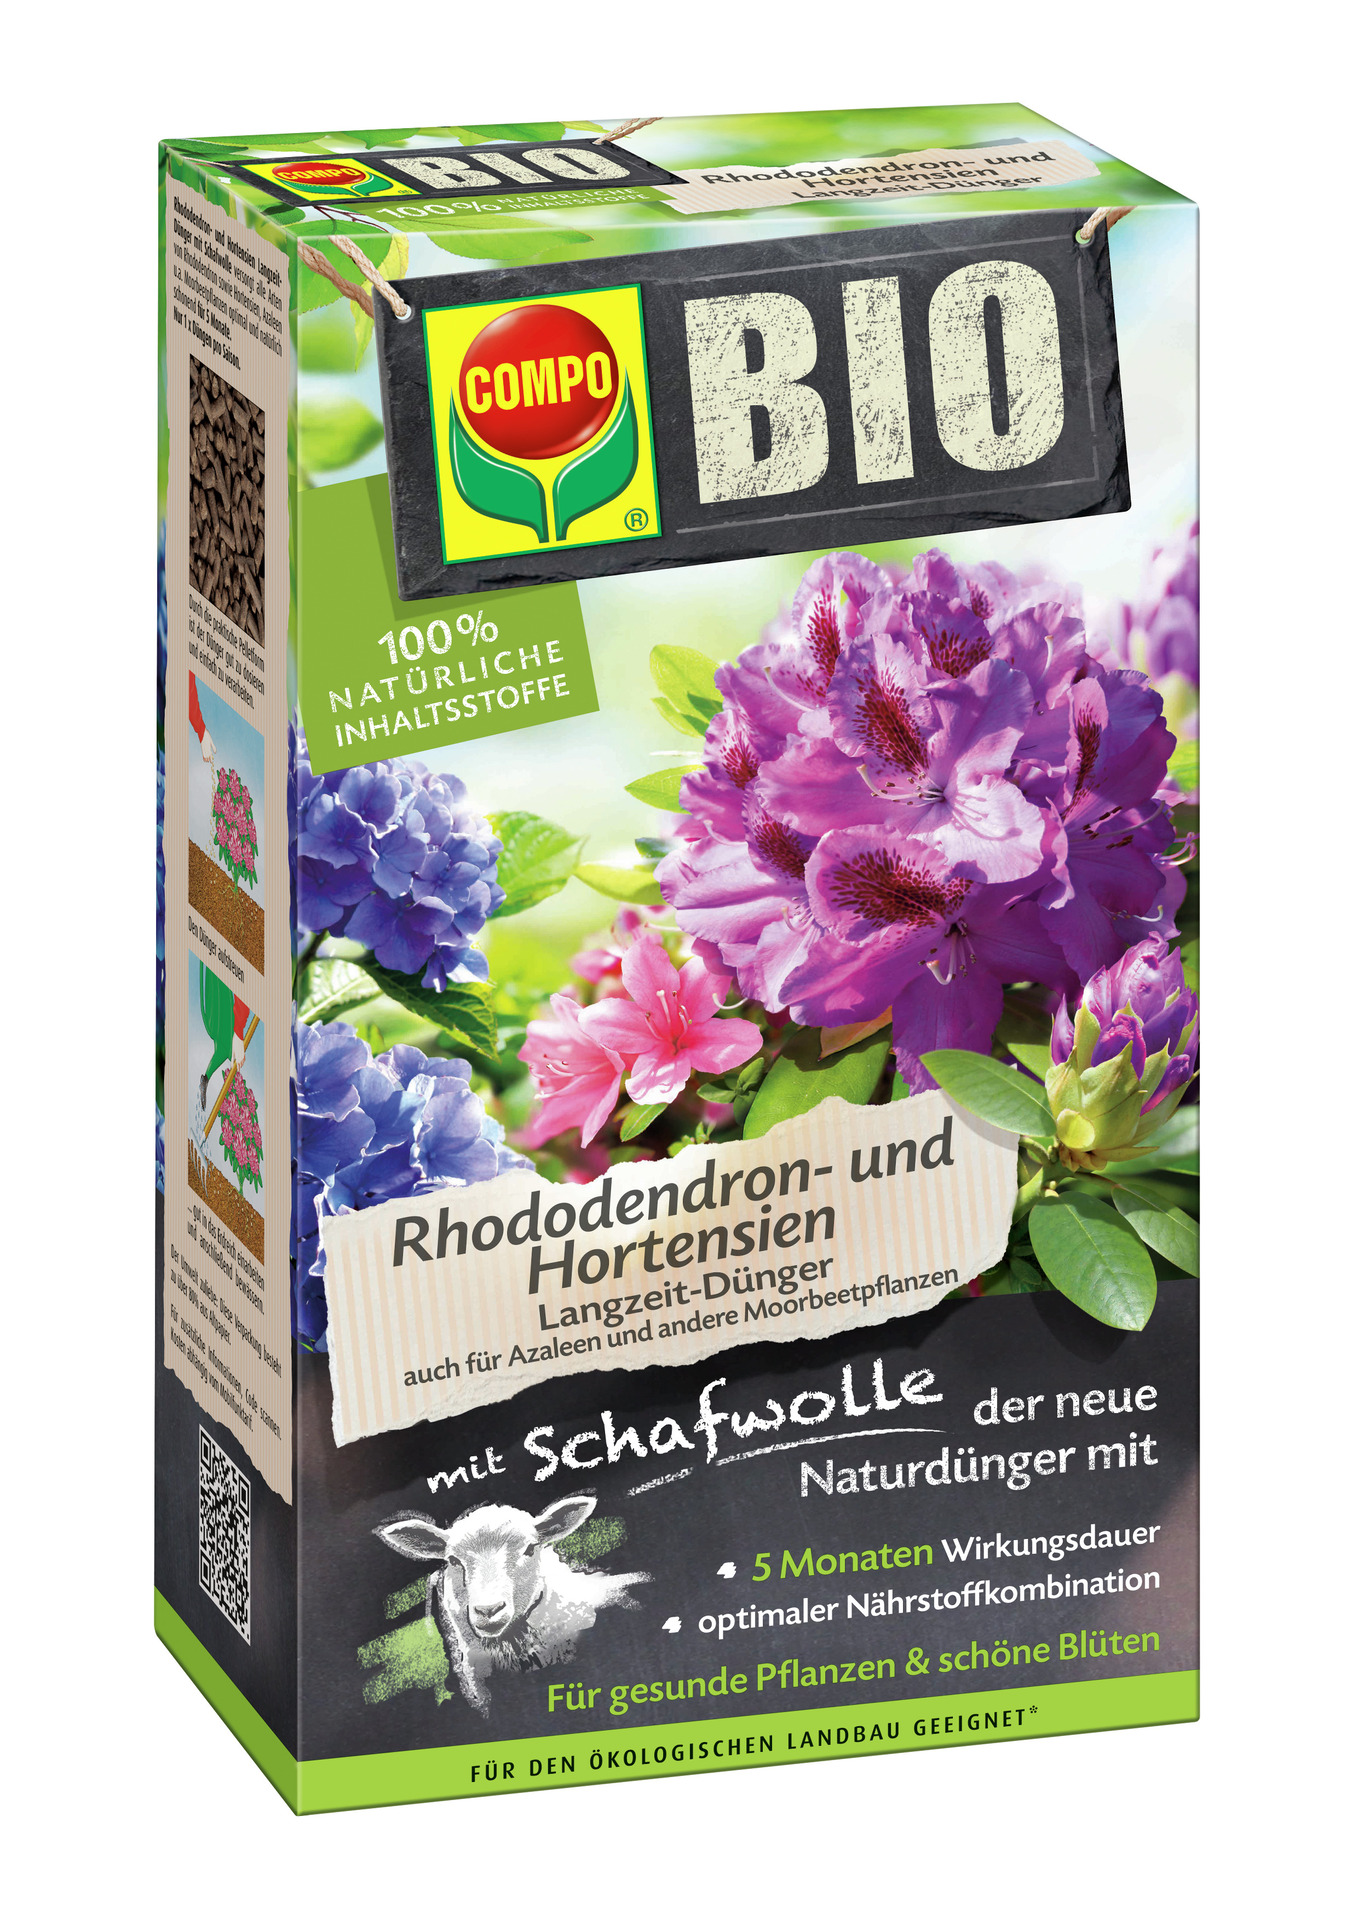 BIO Rhododendron- und Hortensien Langzeit-Dünger mit Schafwolle